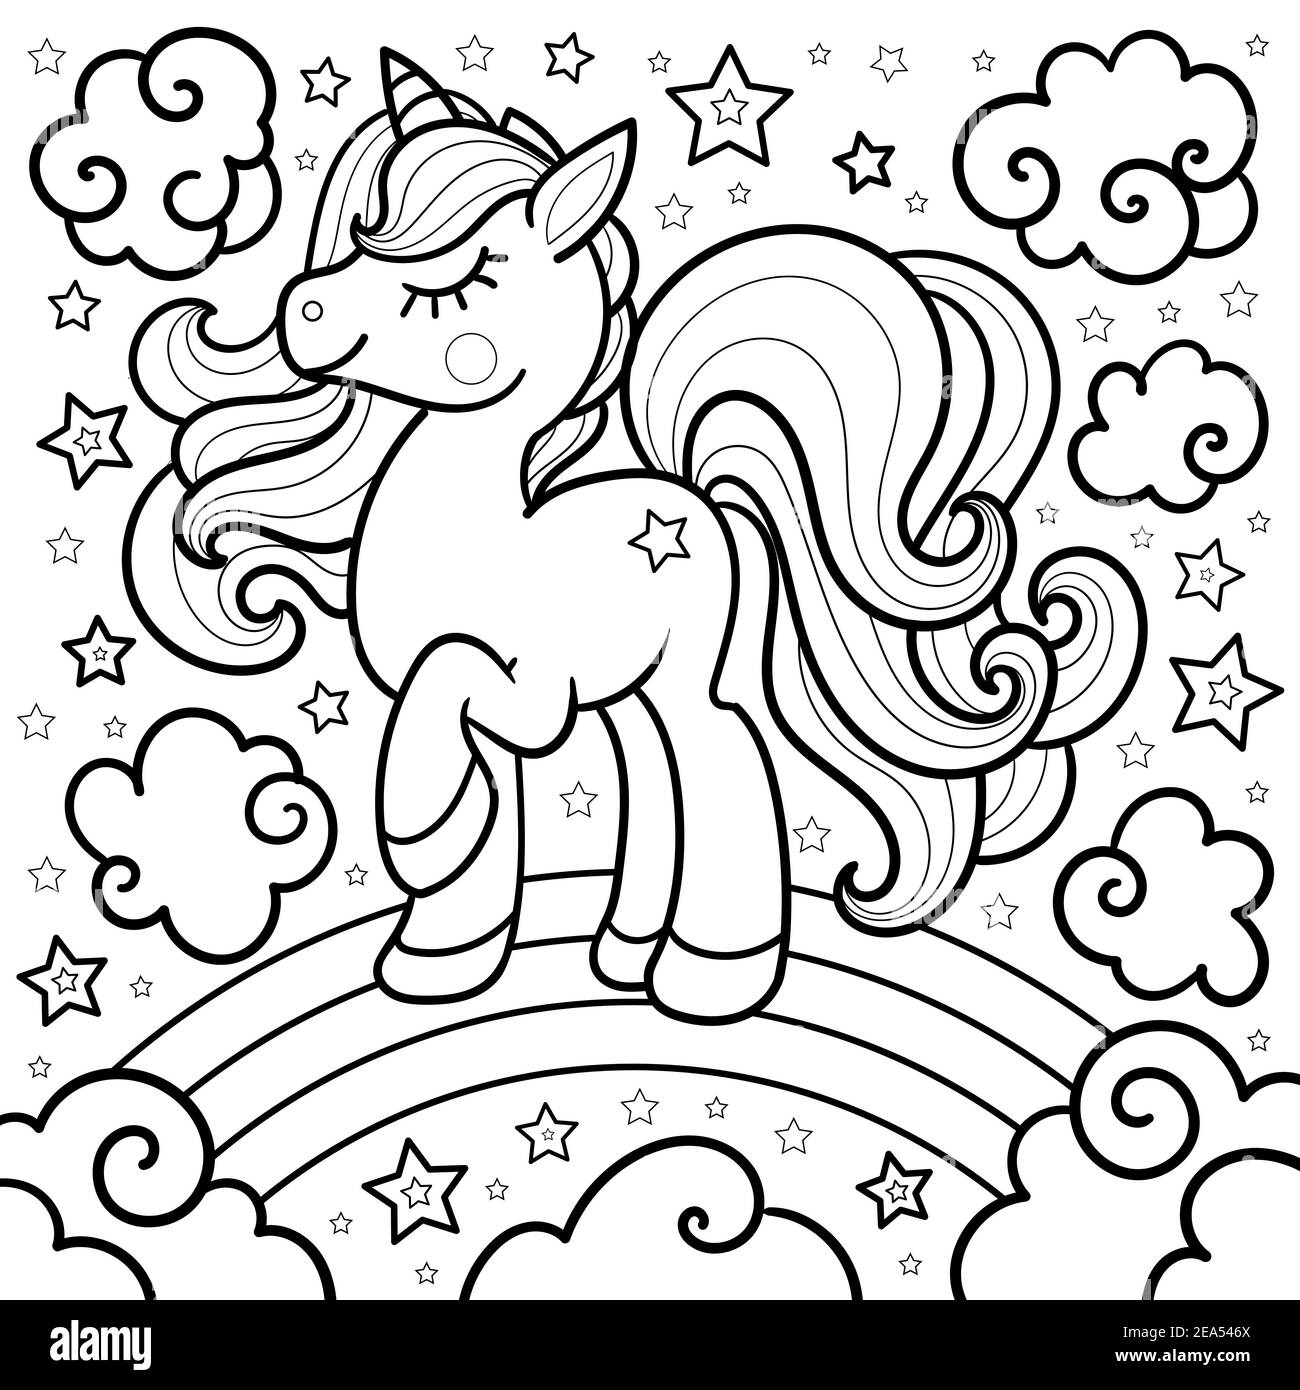 Unicornio con arcoiris Imágenes de stock en blanco y negro - Alamy